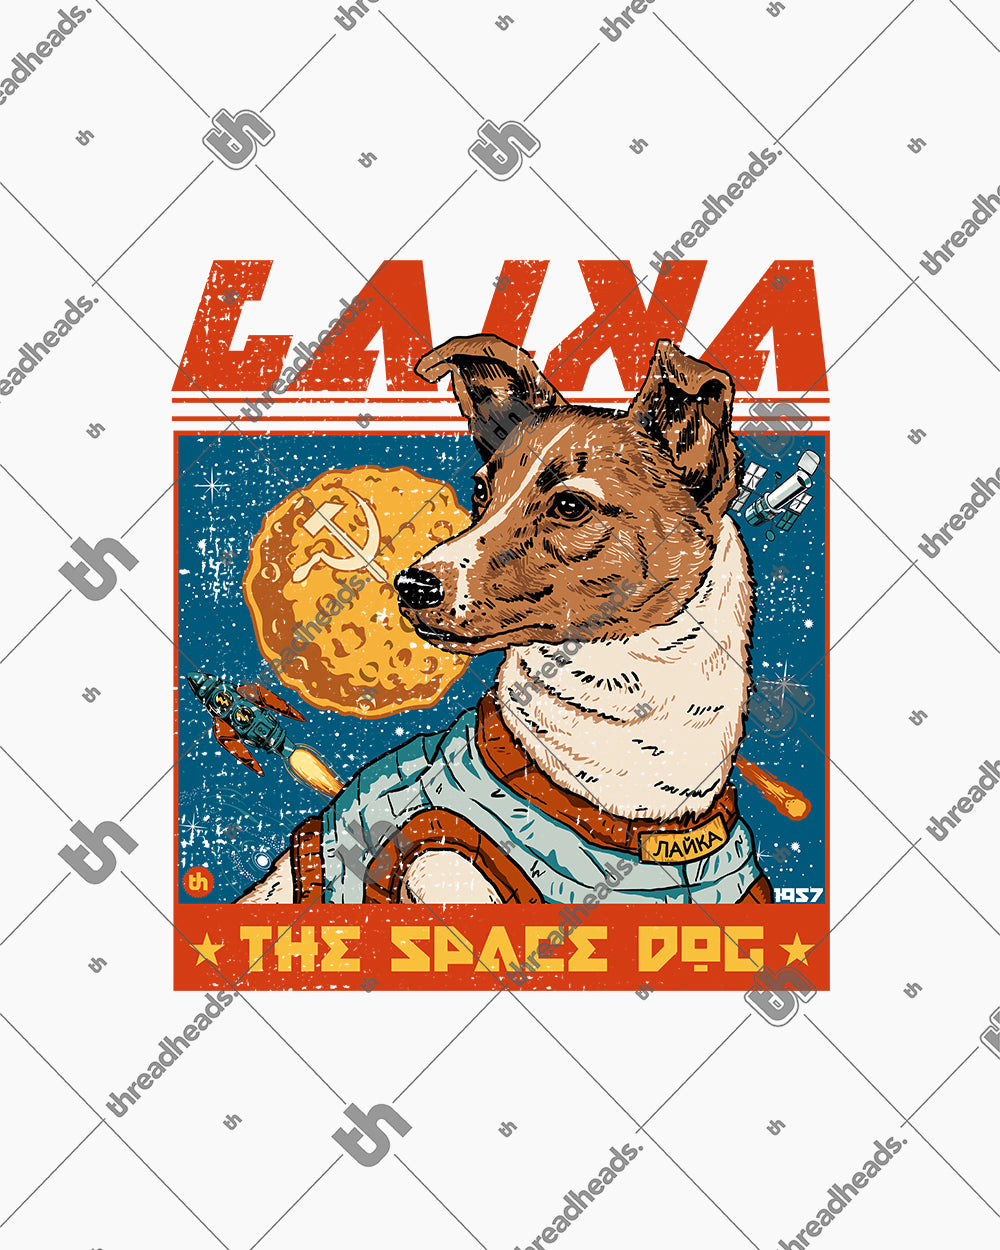 Laika the Space Dog Crop Tee Australia Online #colour_white